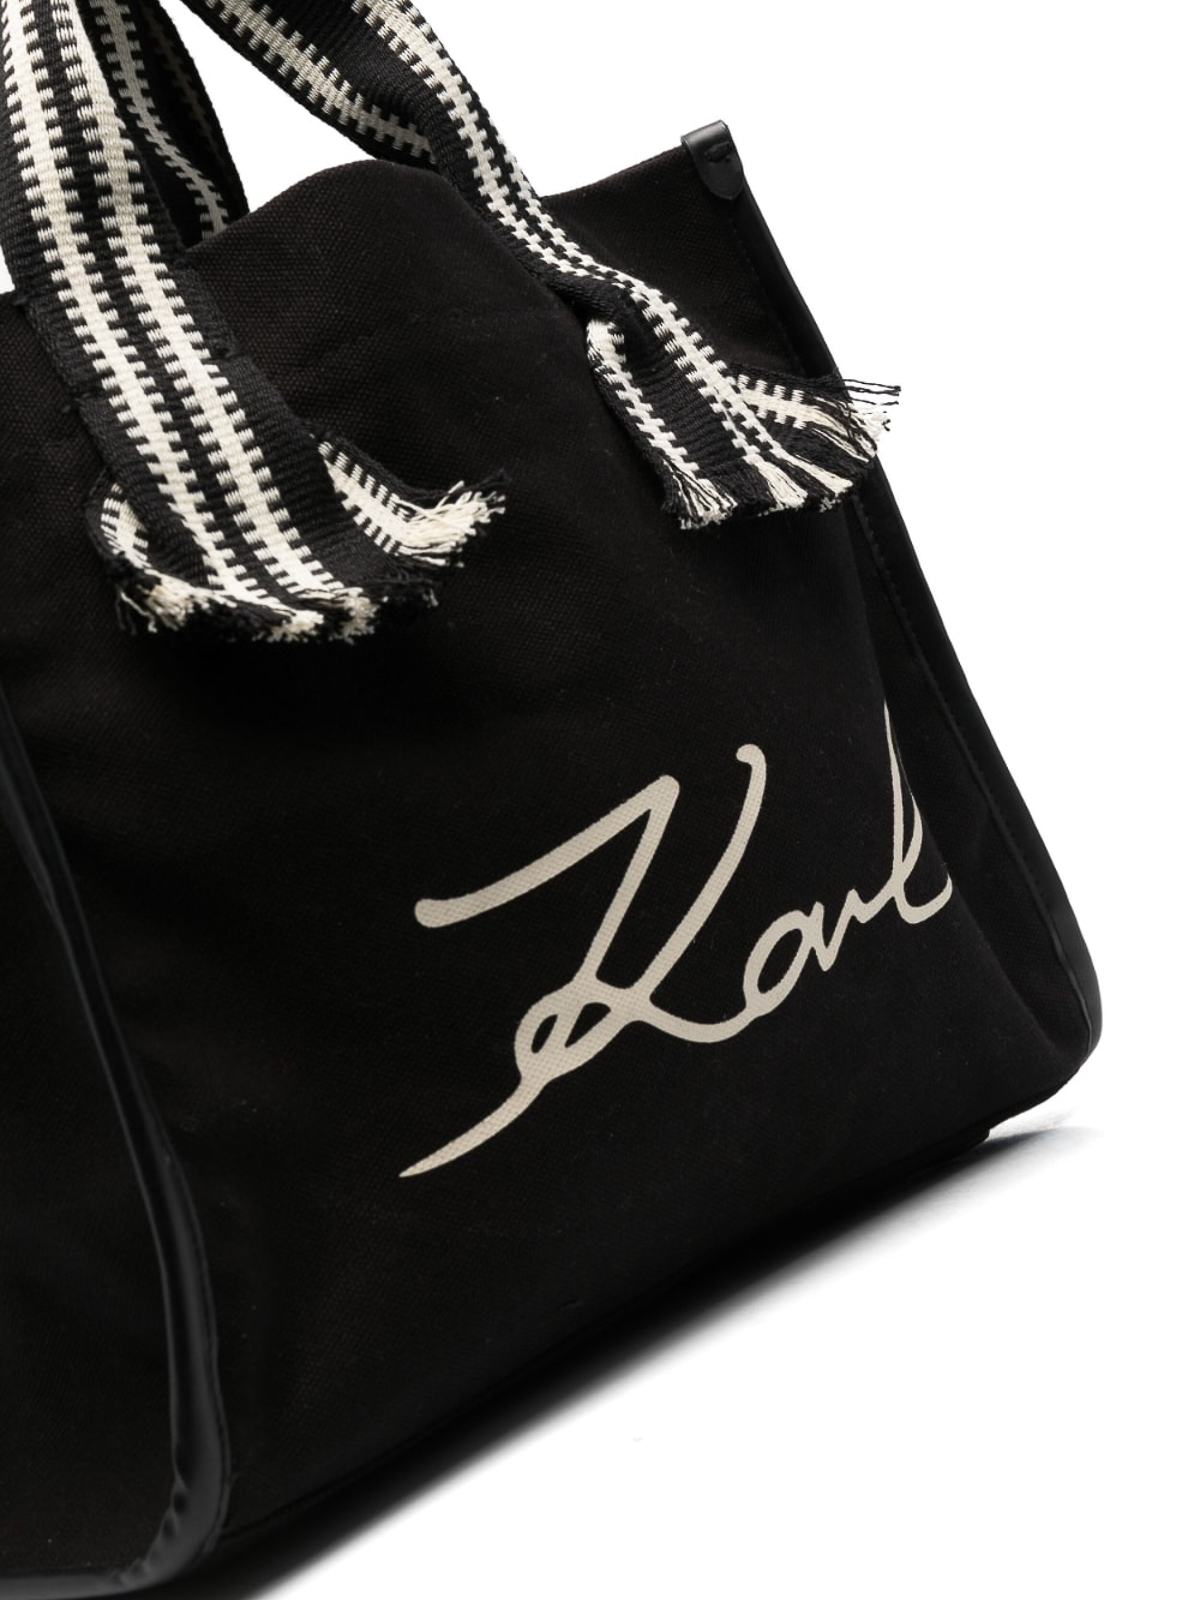 The Top 40 Best Luxury Designer Handbag Brands (2023) | Sarah Scoop